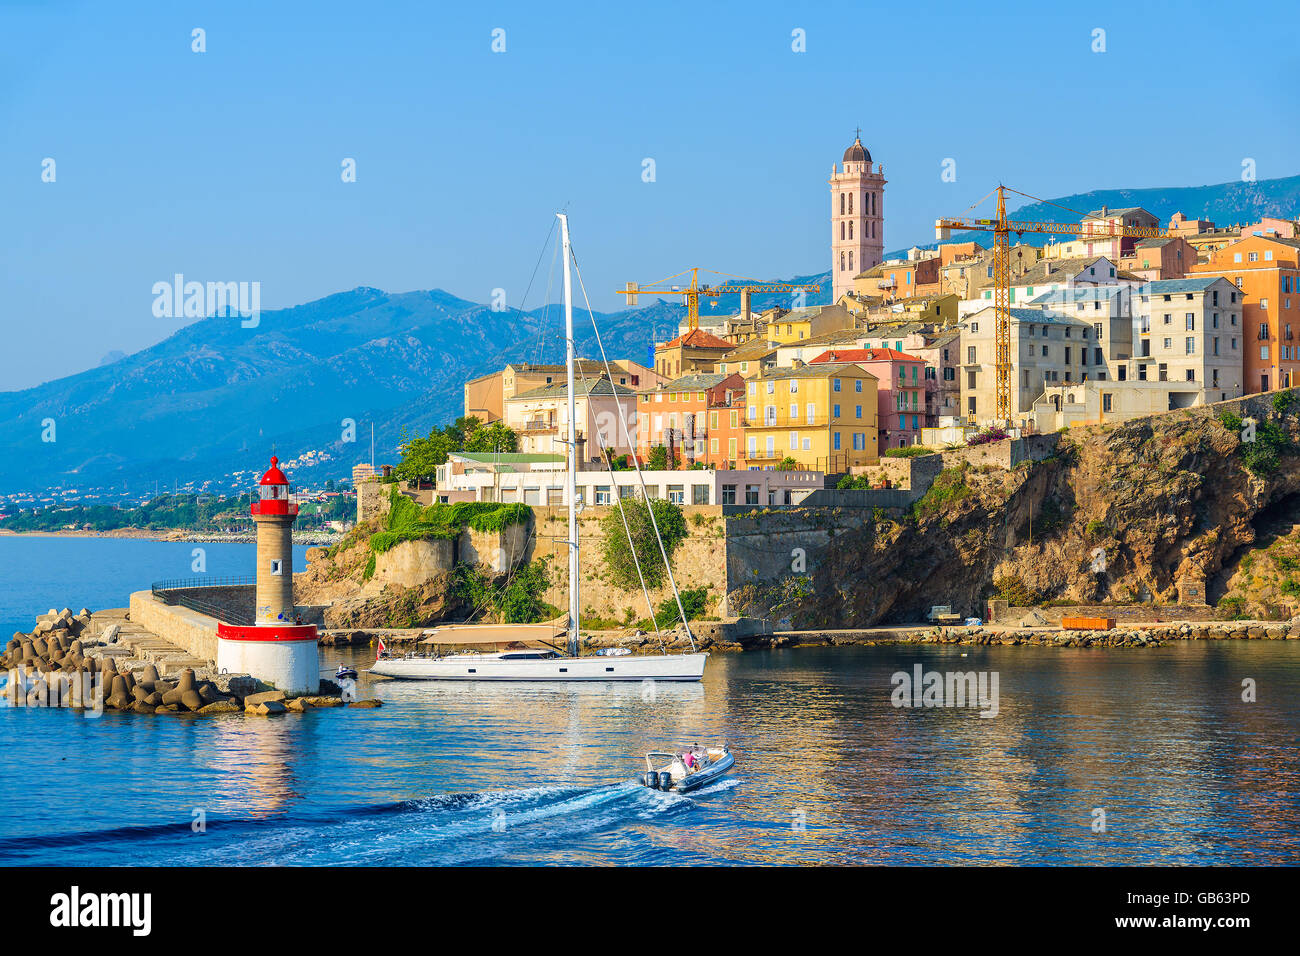 PORT de Bastia, Corse - Jul 5, 2015 : une vue de Bastia ville sur la côte de l'île de Corse, France. Bastia est capitale de l'île Banque D'Images